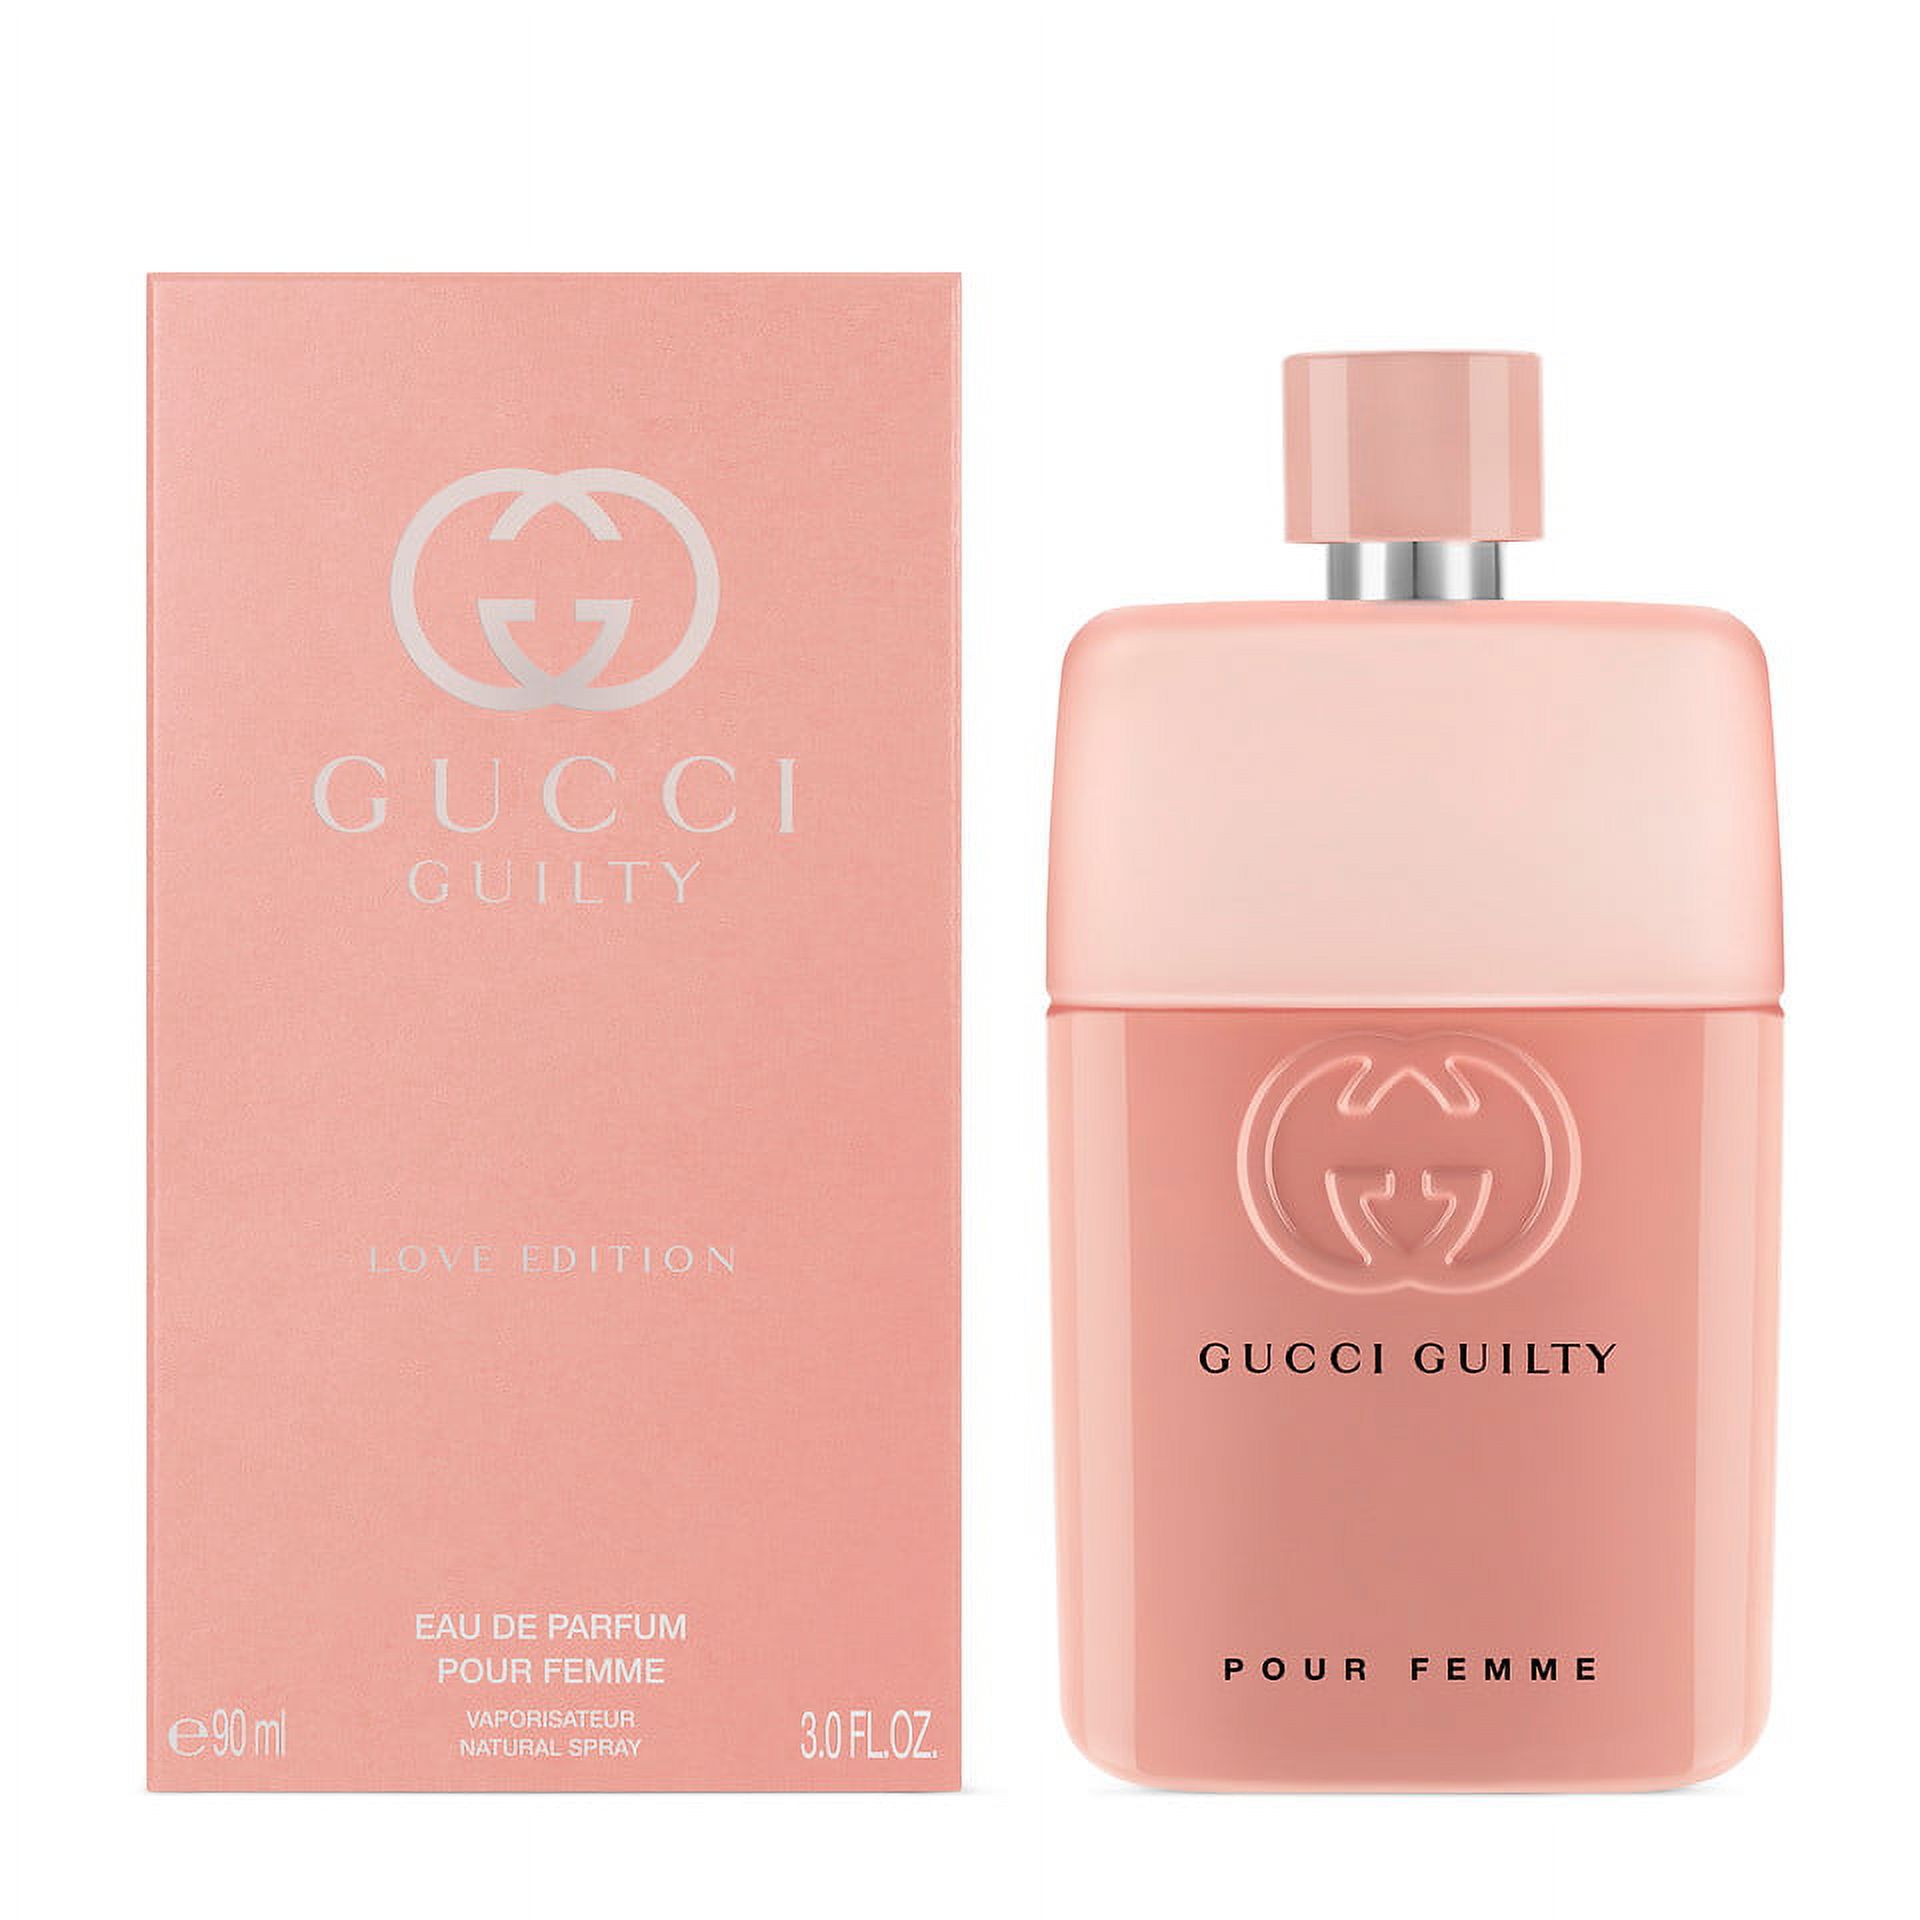 Gucci Guilty Love Edition Pour Femme Eau de Parfum, Perfume for Women, 3 Oz - image 3 of 3